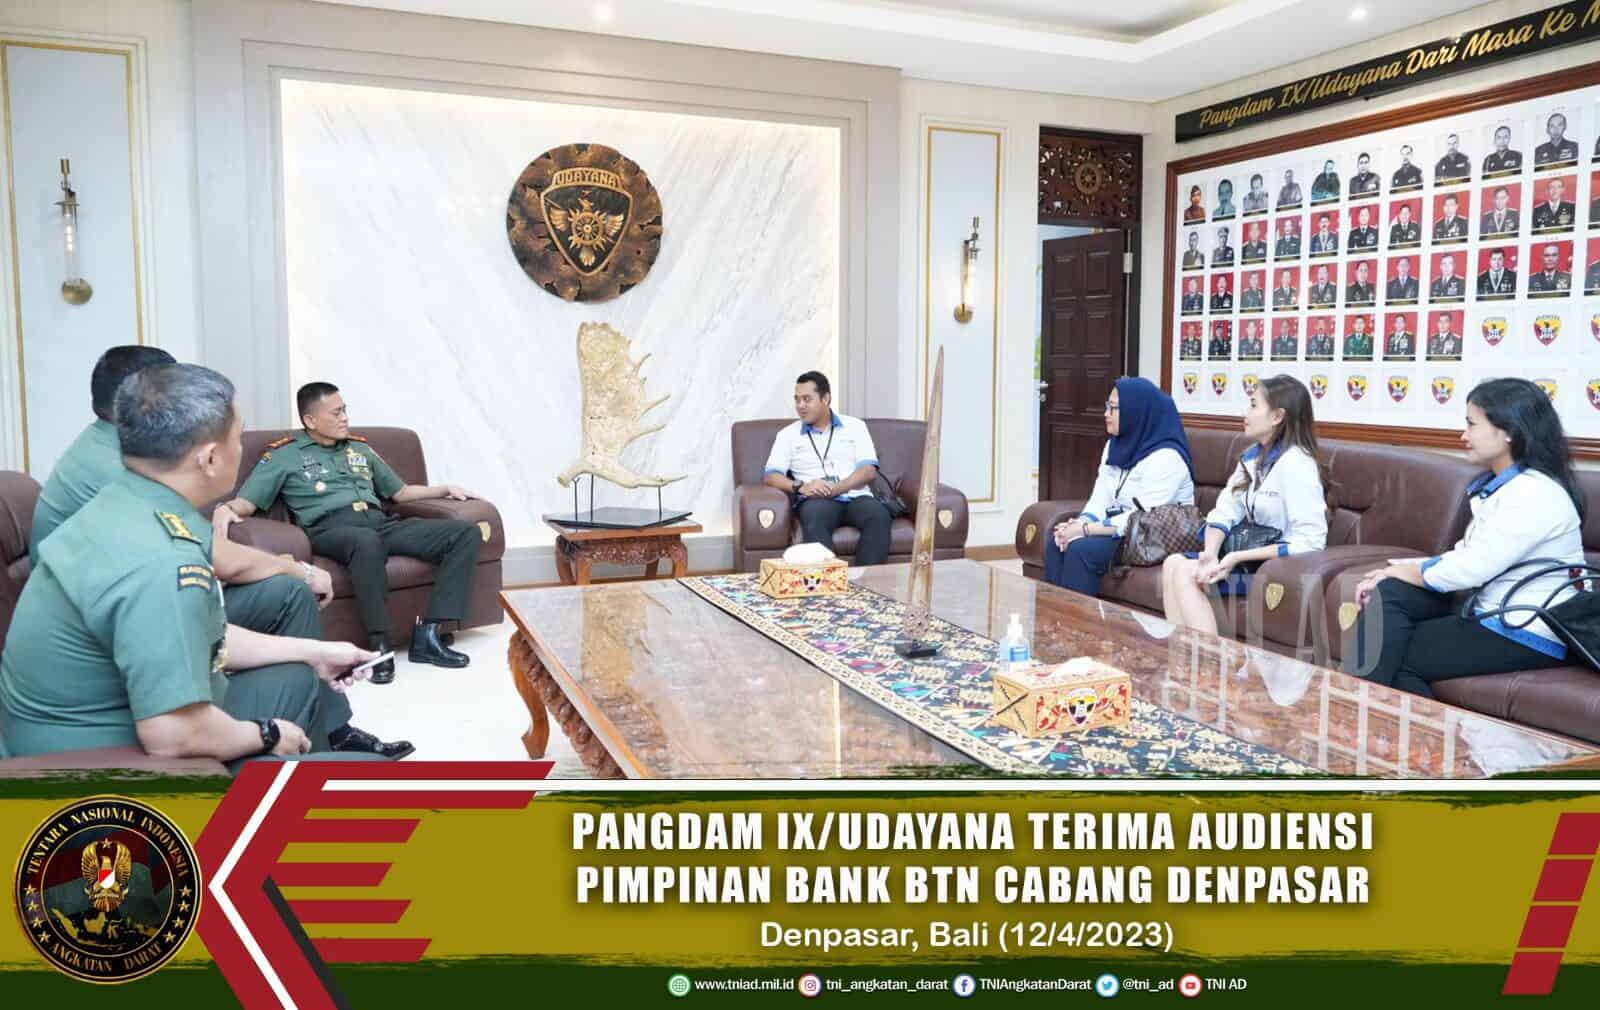 Pangdam IX/Udayana Terima Audiensi Pimpinan Bank BTN Cabang Denpasar